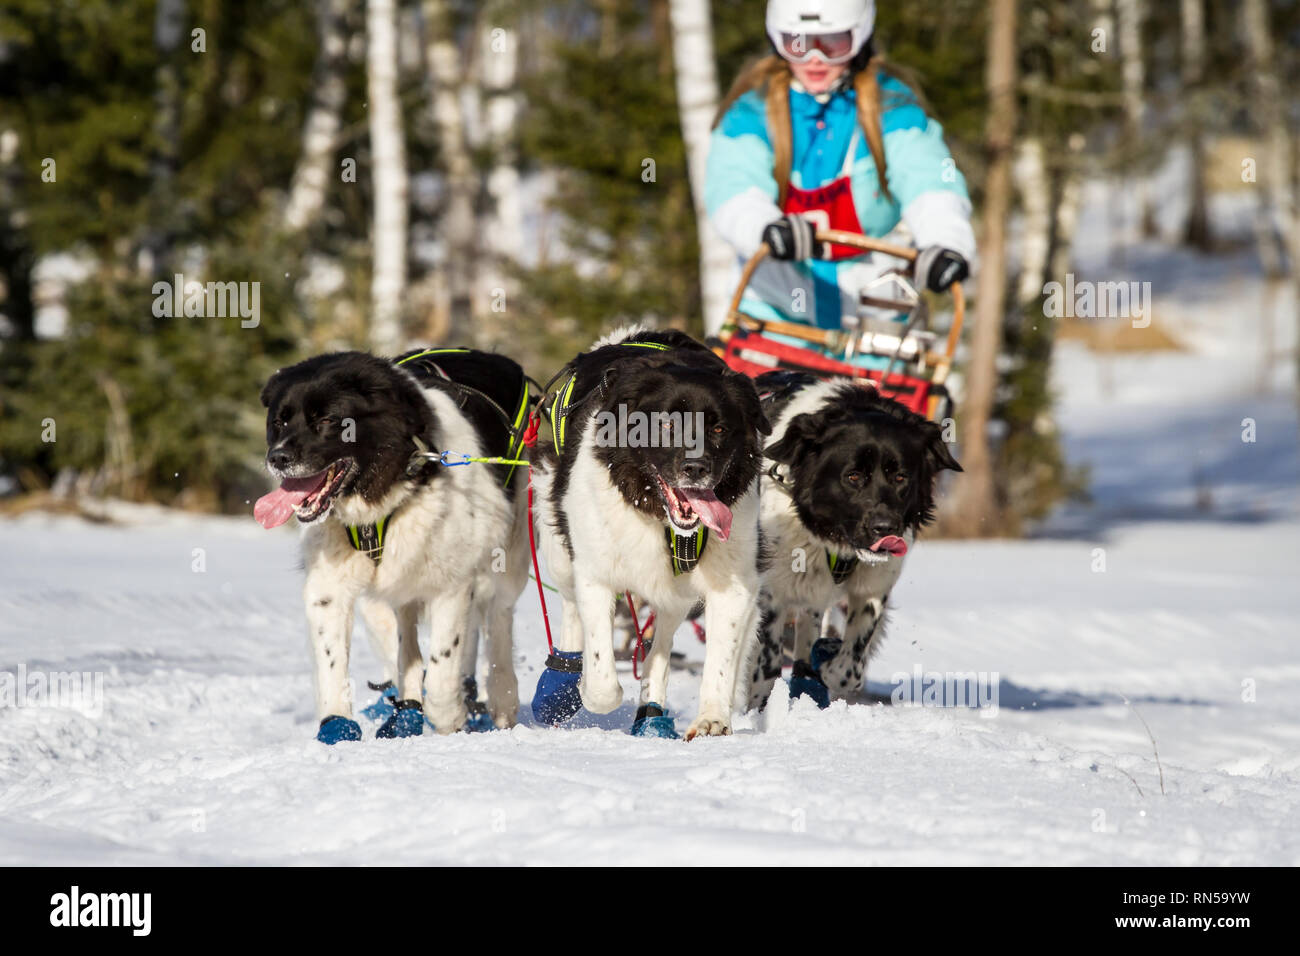 Cesky horský pes (República Checa) @ Mountain Dog Sled Dog Race, República Checa Foto de stock